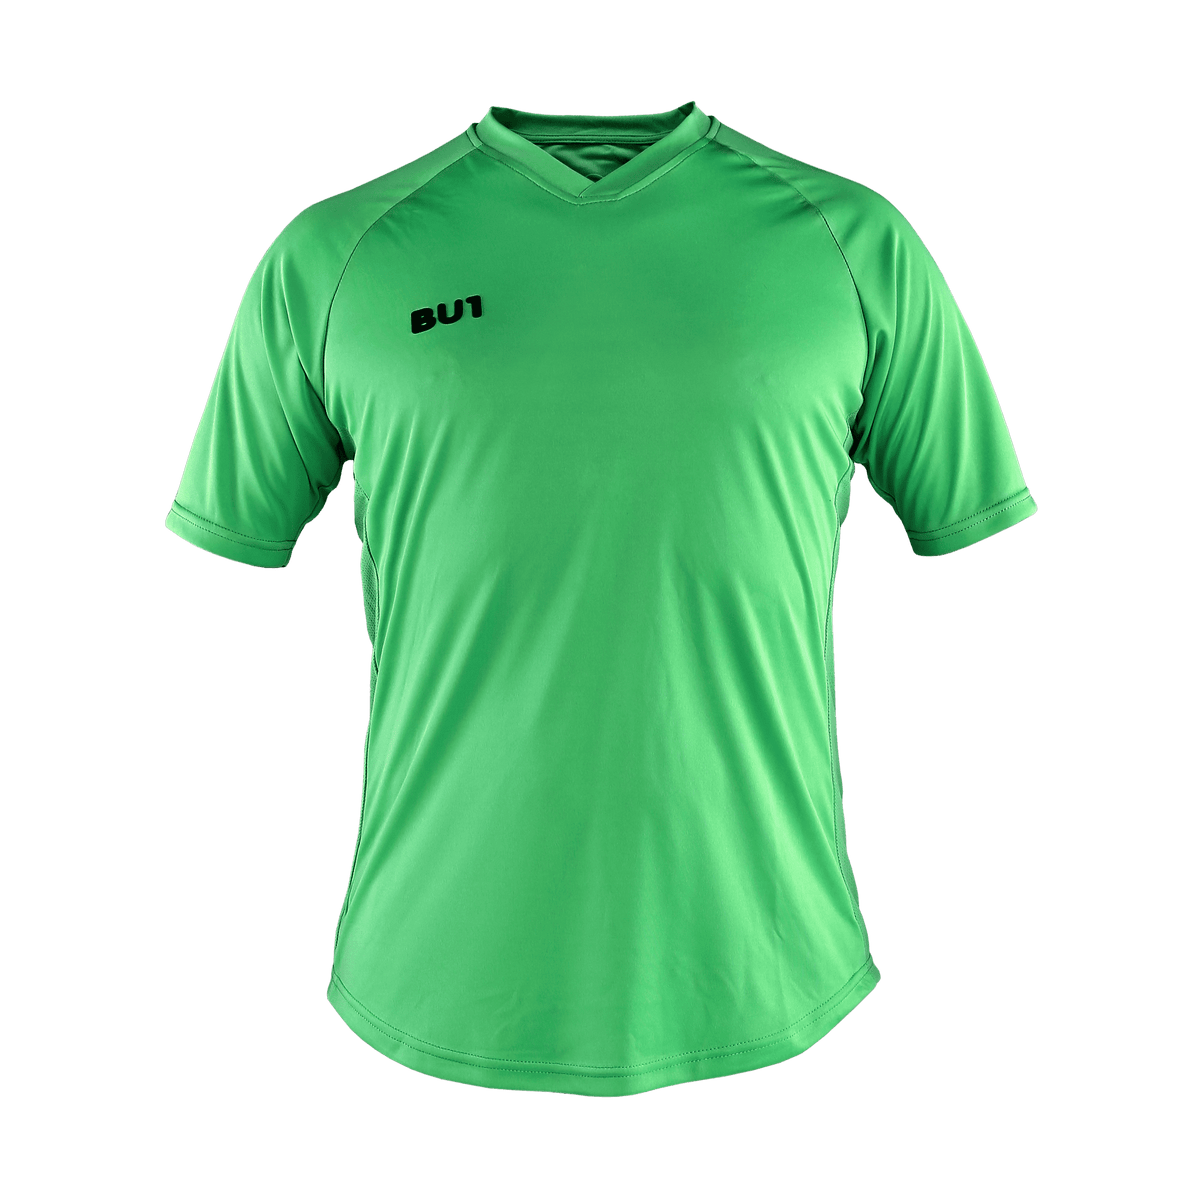 Camiseta BU1 22 verde